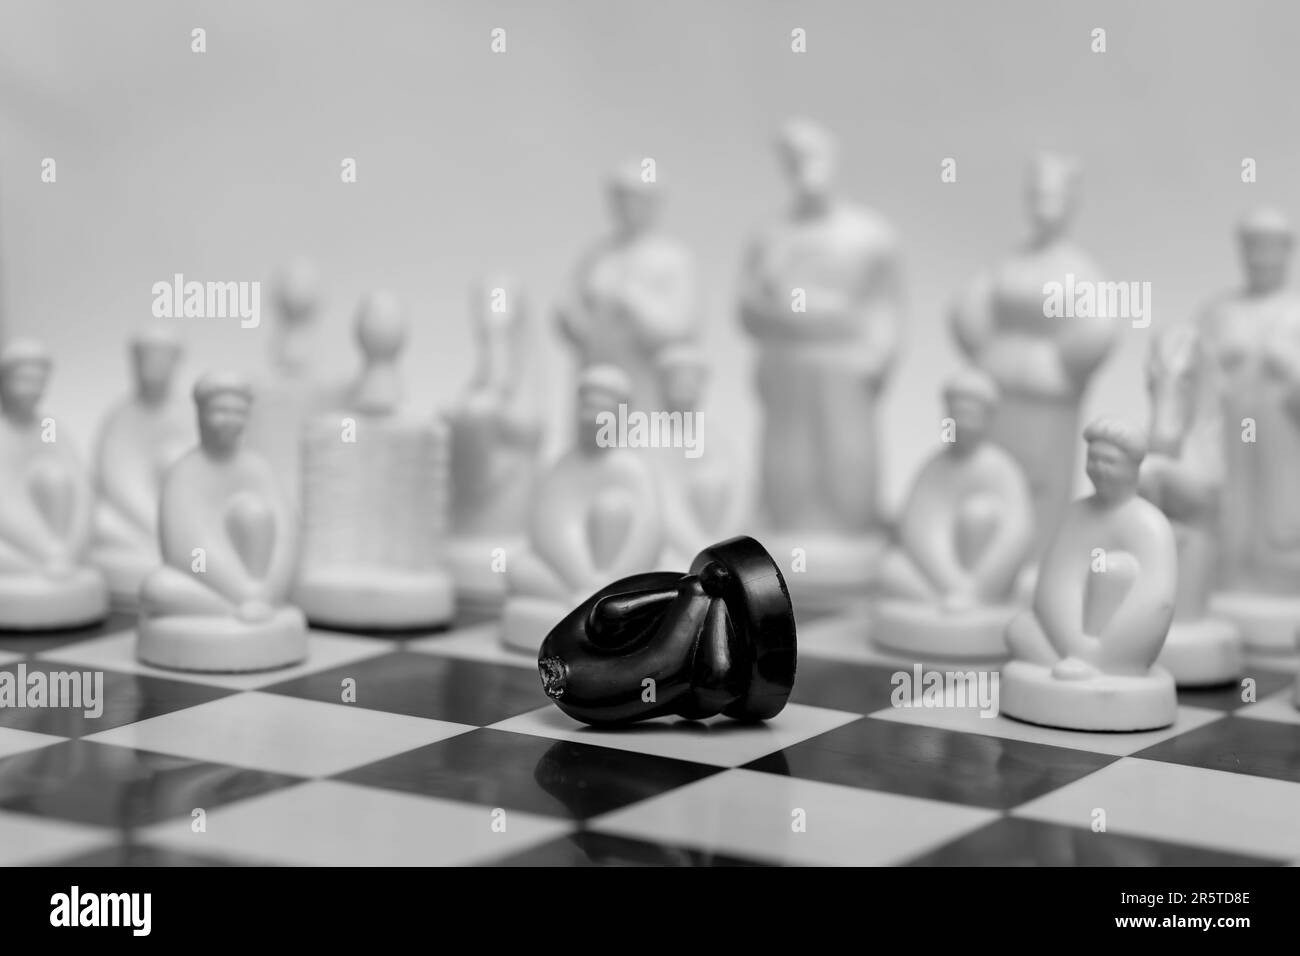 Gli scacchi ucraini con gli eroi di Gogol sul tabellone simboleggiano la battaglia e la guerra Foto Stock